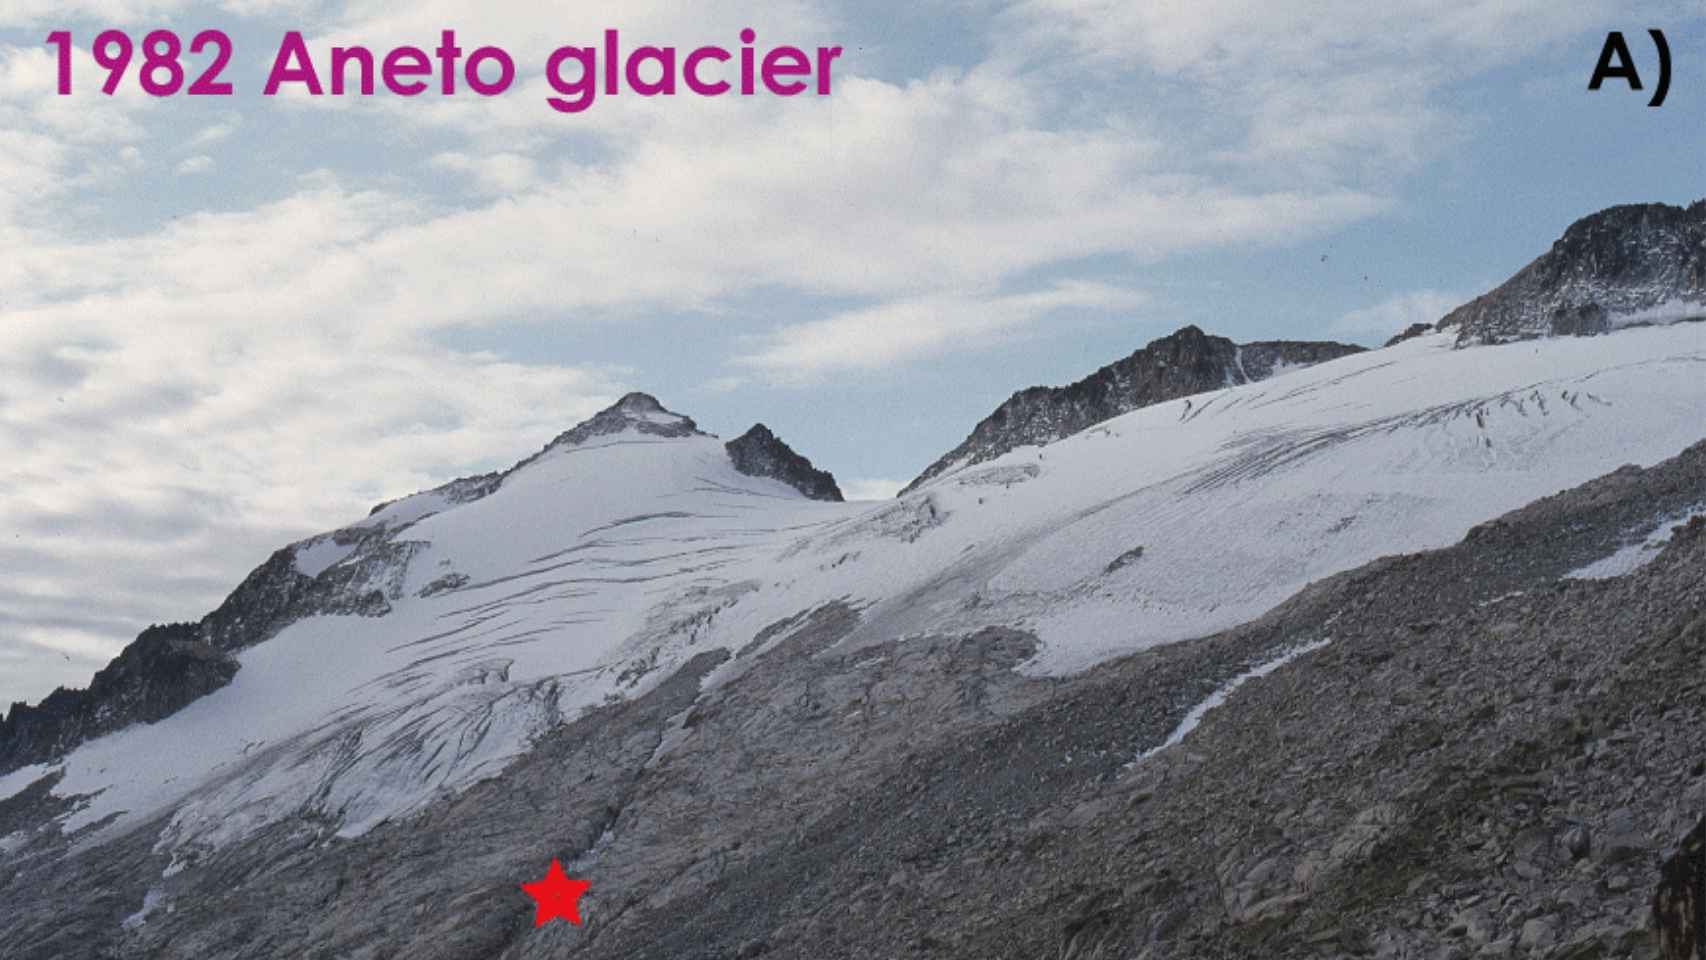 El glaciar Aneto en 1982. El punto marcado con una estrella sirve de referencia a la extensión.